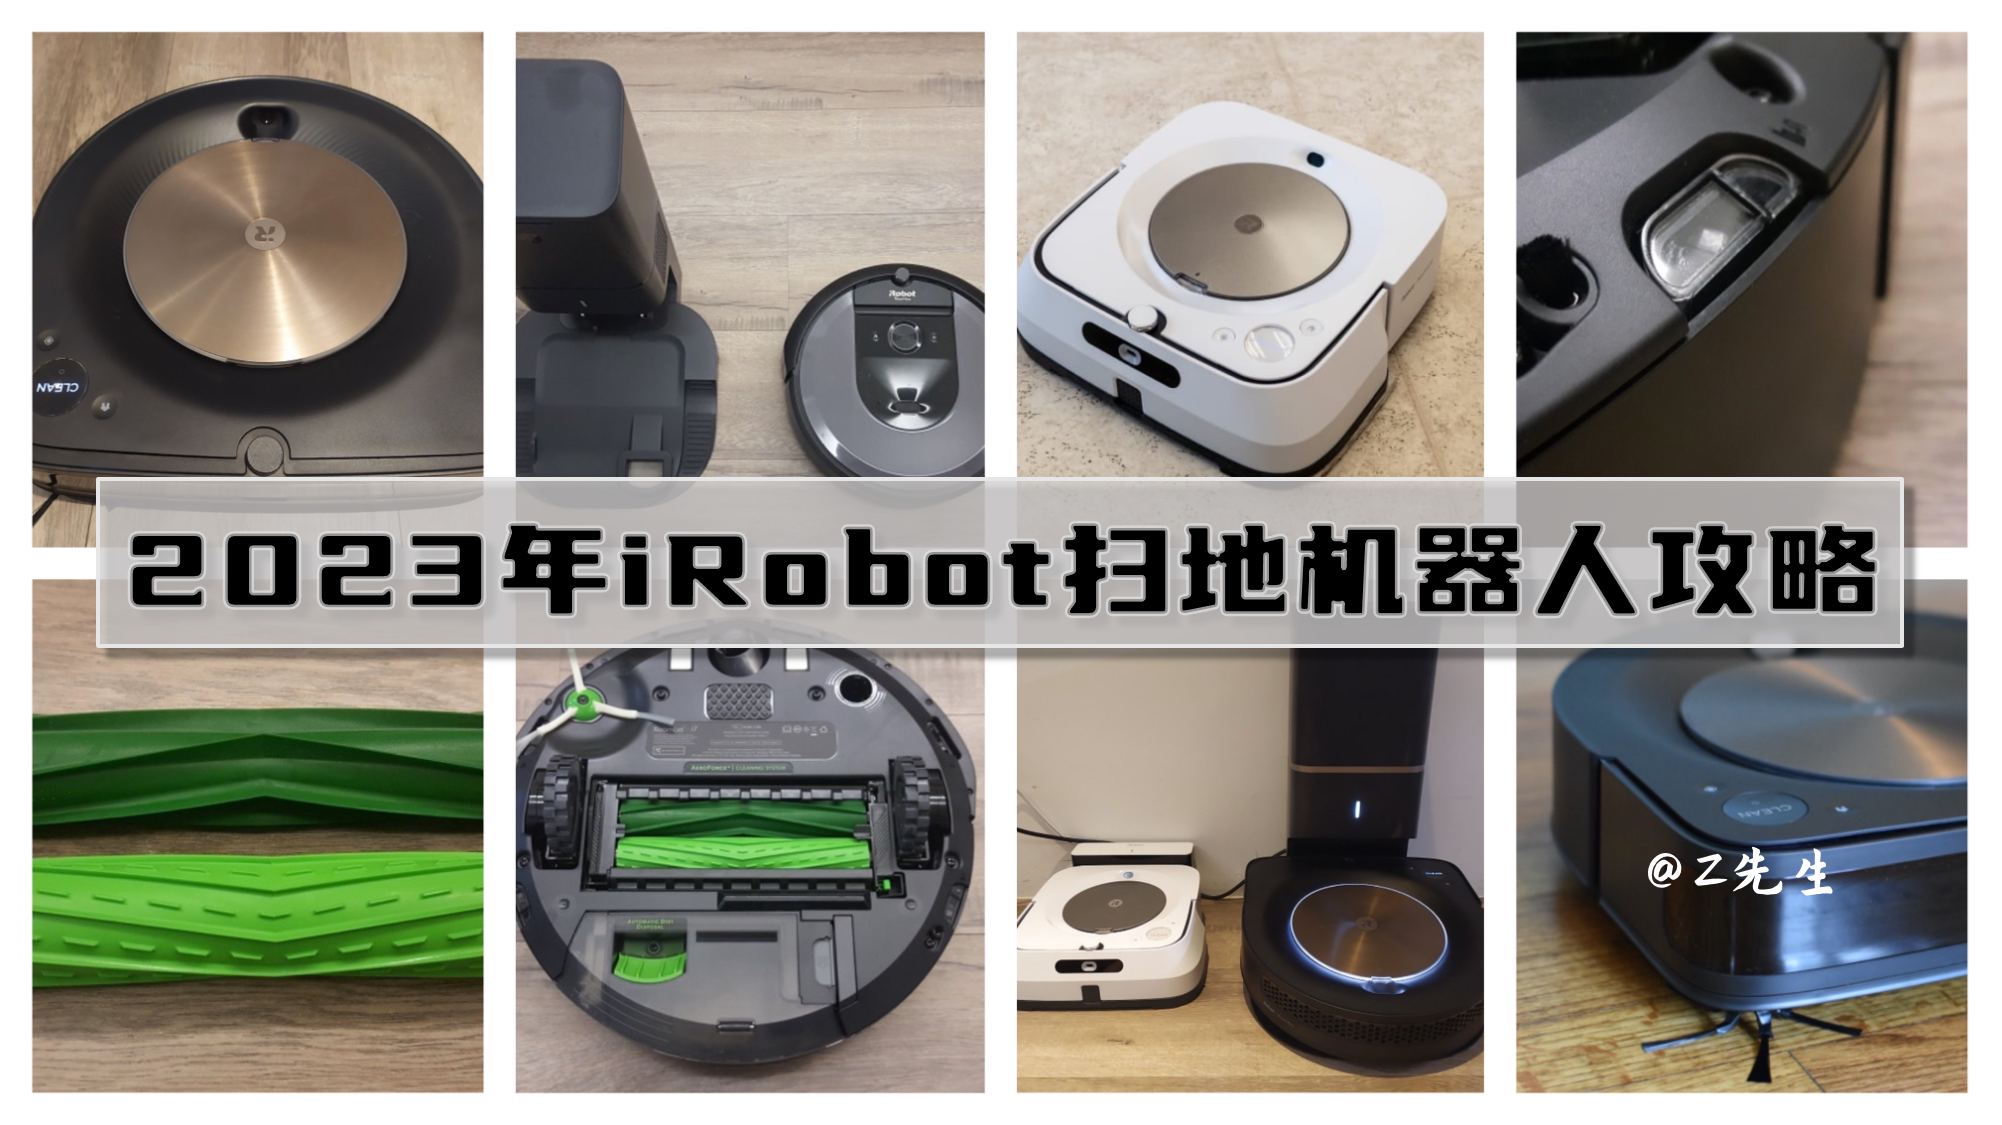 【2023年双11 iRobot扫地机器人推荐】iRobot Roomba 980、i7、s9